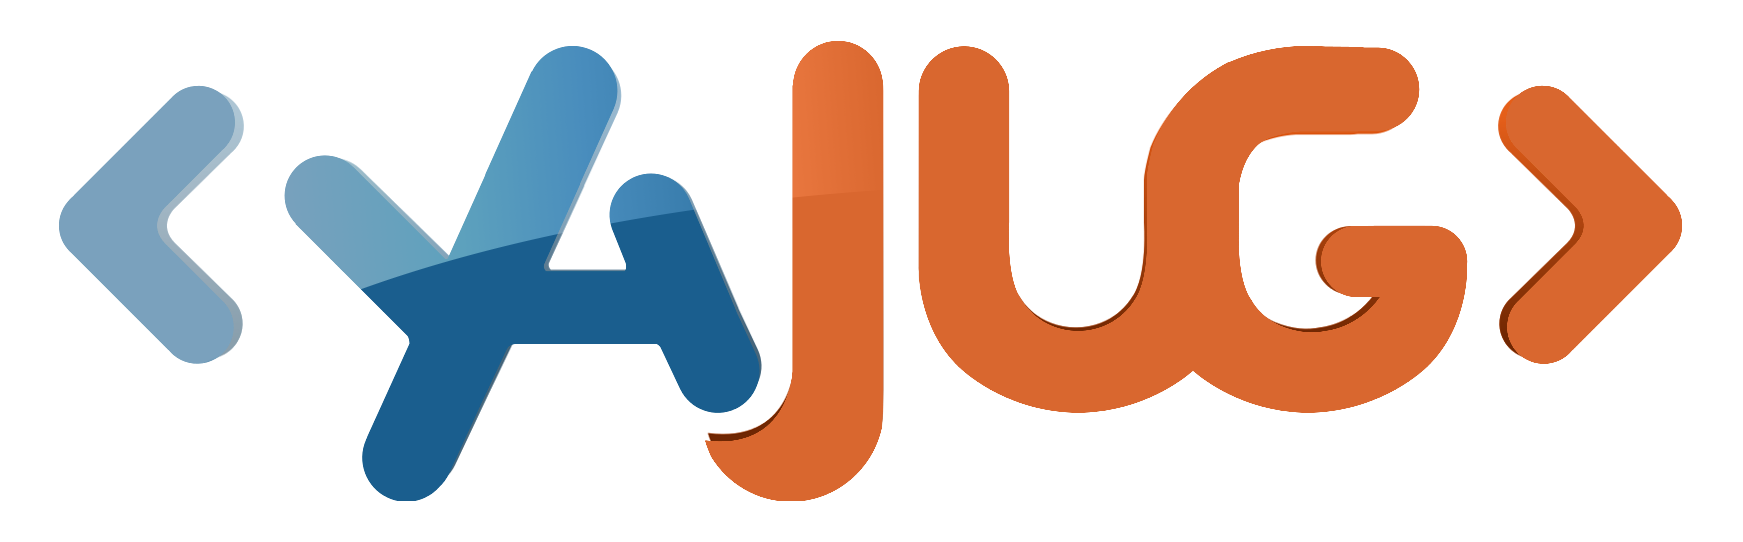 Logo YAJUG